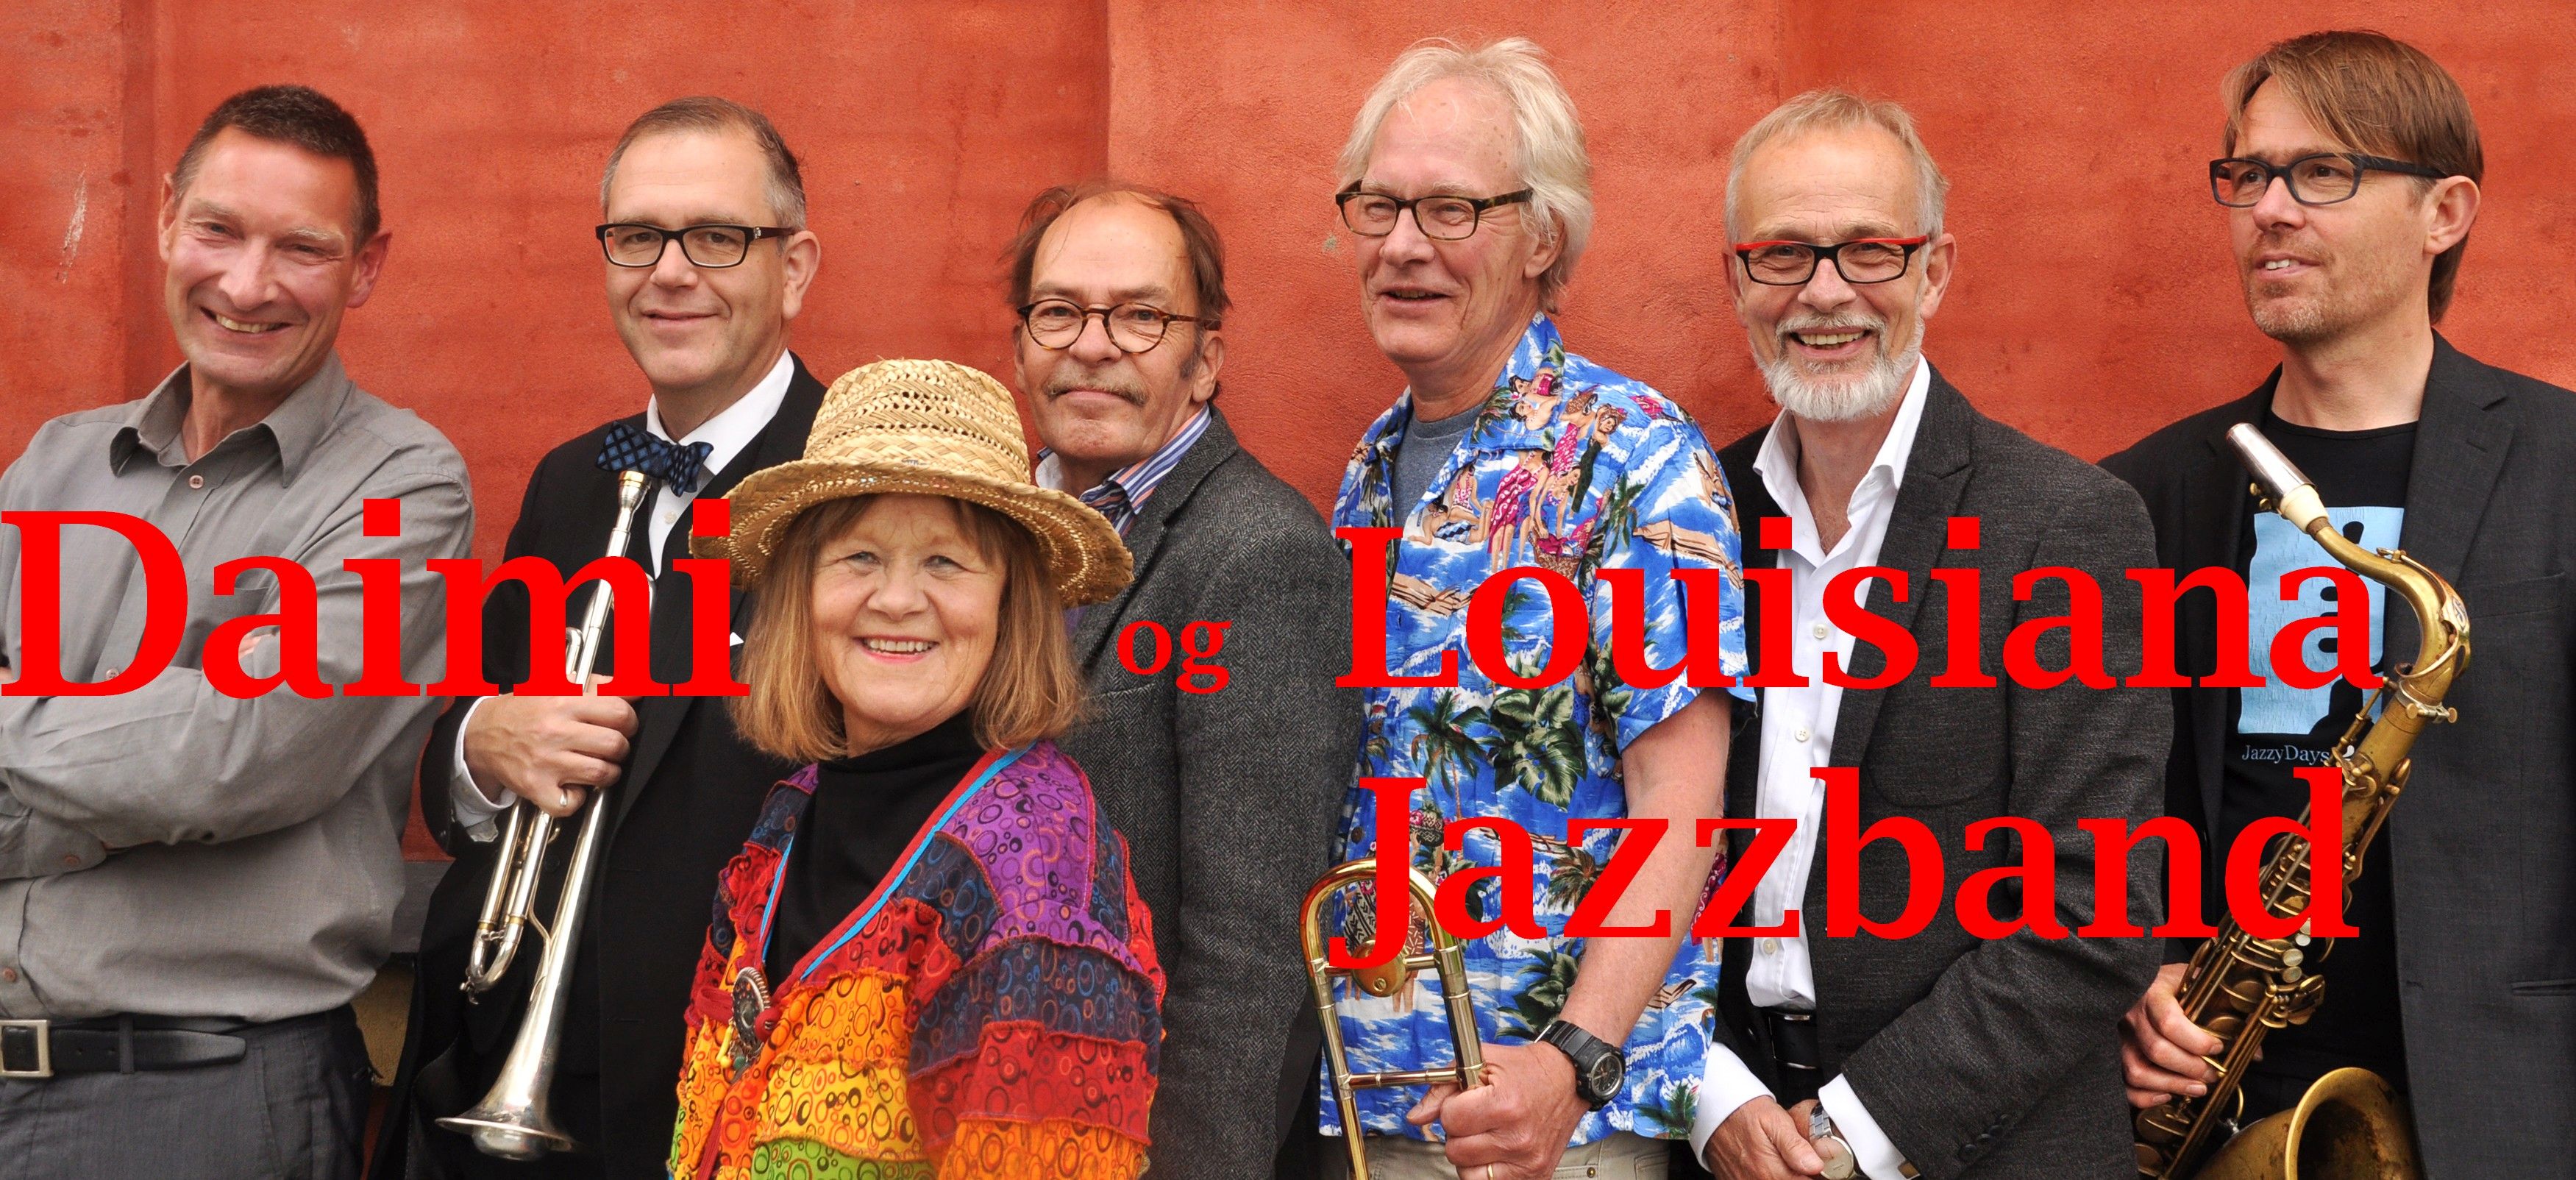 Daimi & Louisiana Jazzband ((DK)) - Photo: 